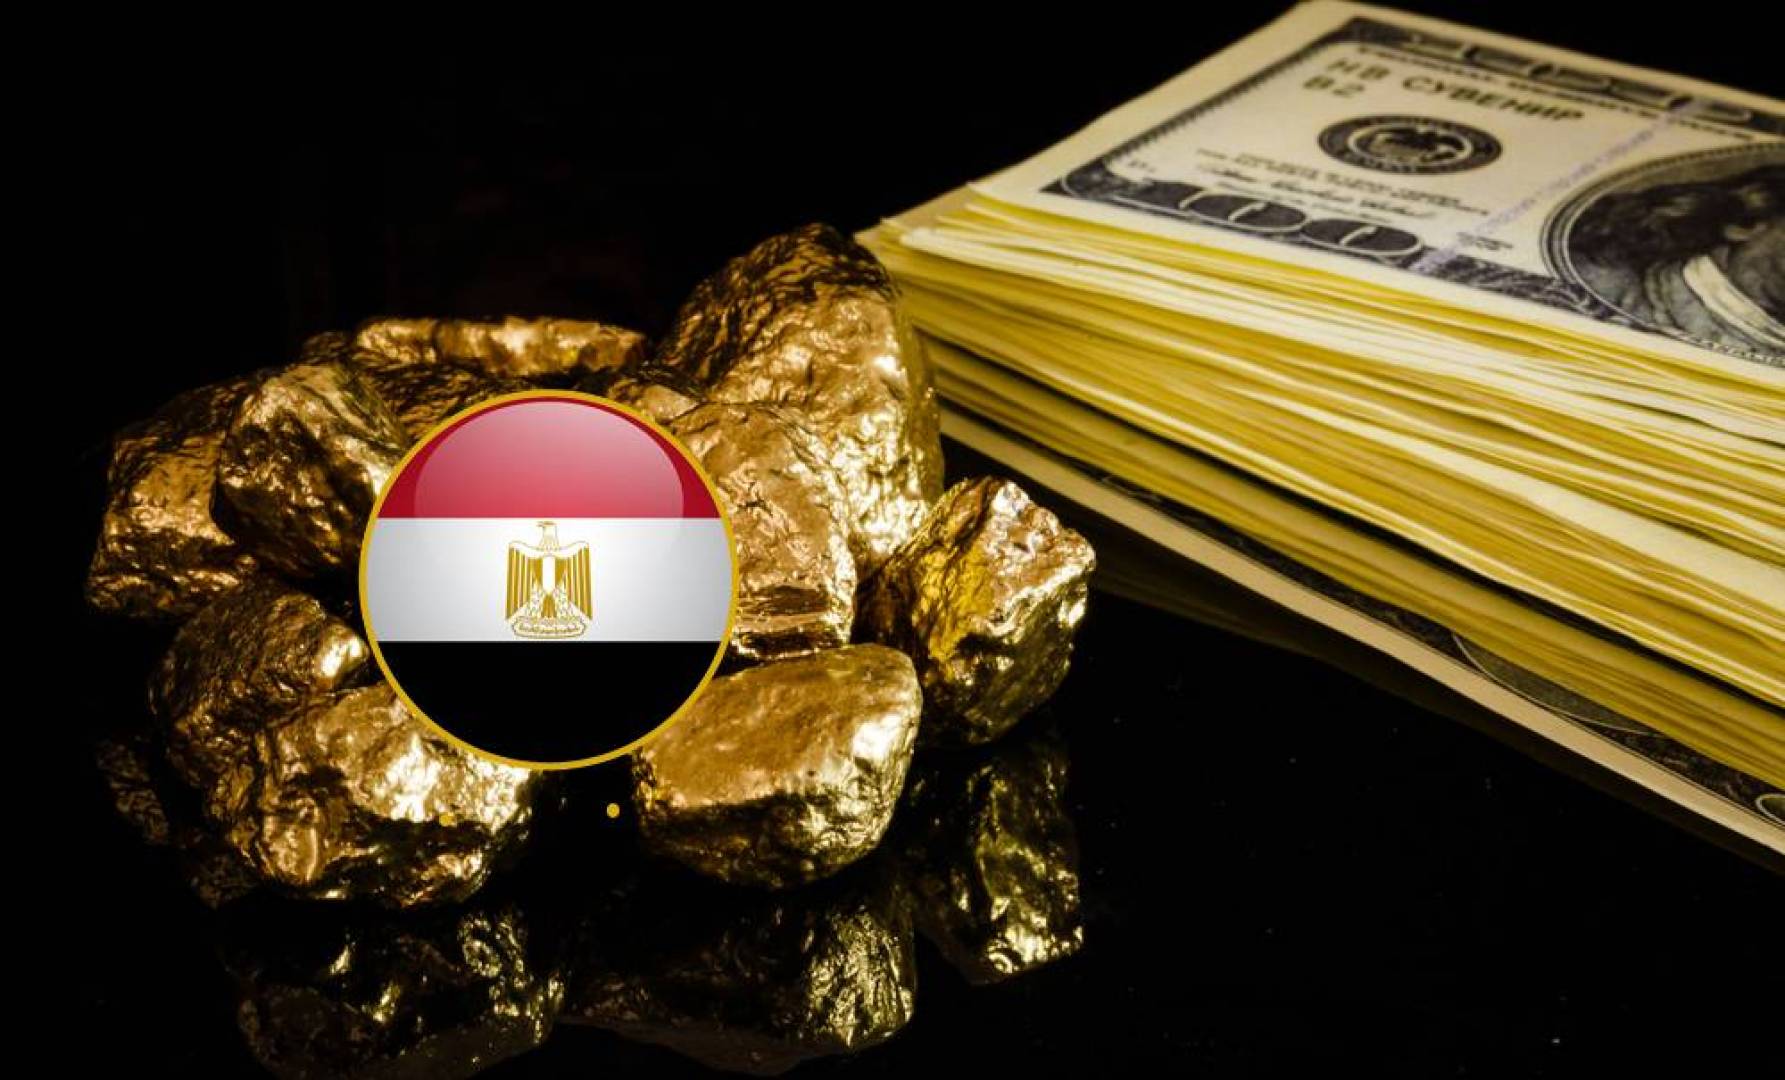 "يونيو الخير 2020" كشف جديد للذهب في مصر باحتياطي يزيد عن مليون أوقية ووزارة البترول تكشف بالتفاصيل 1